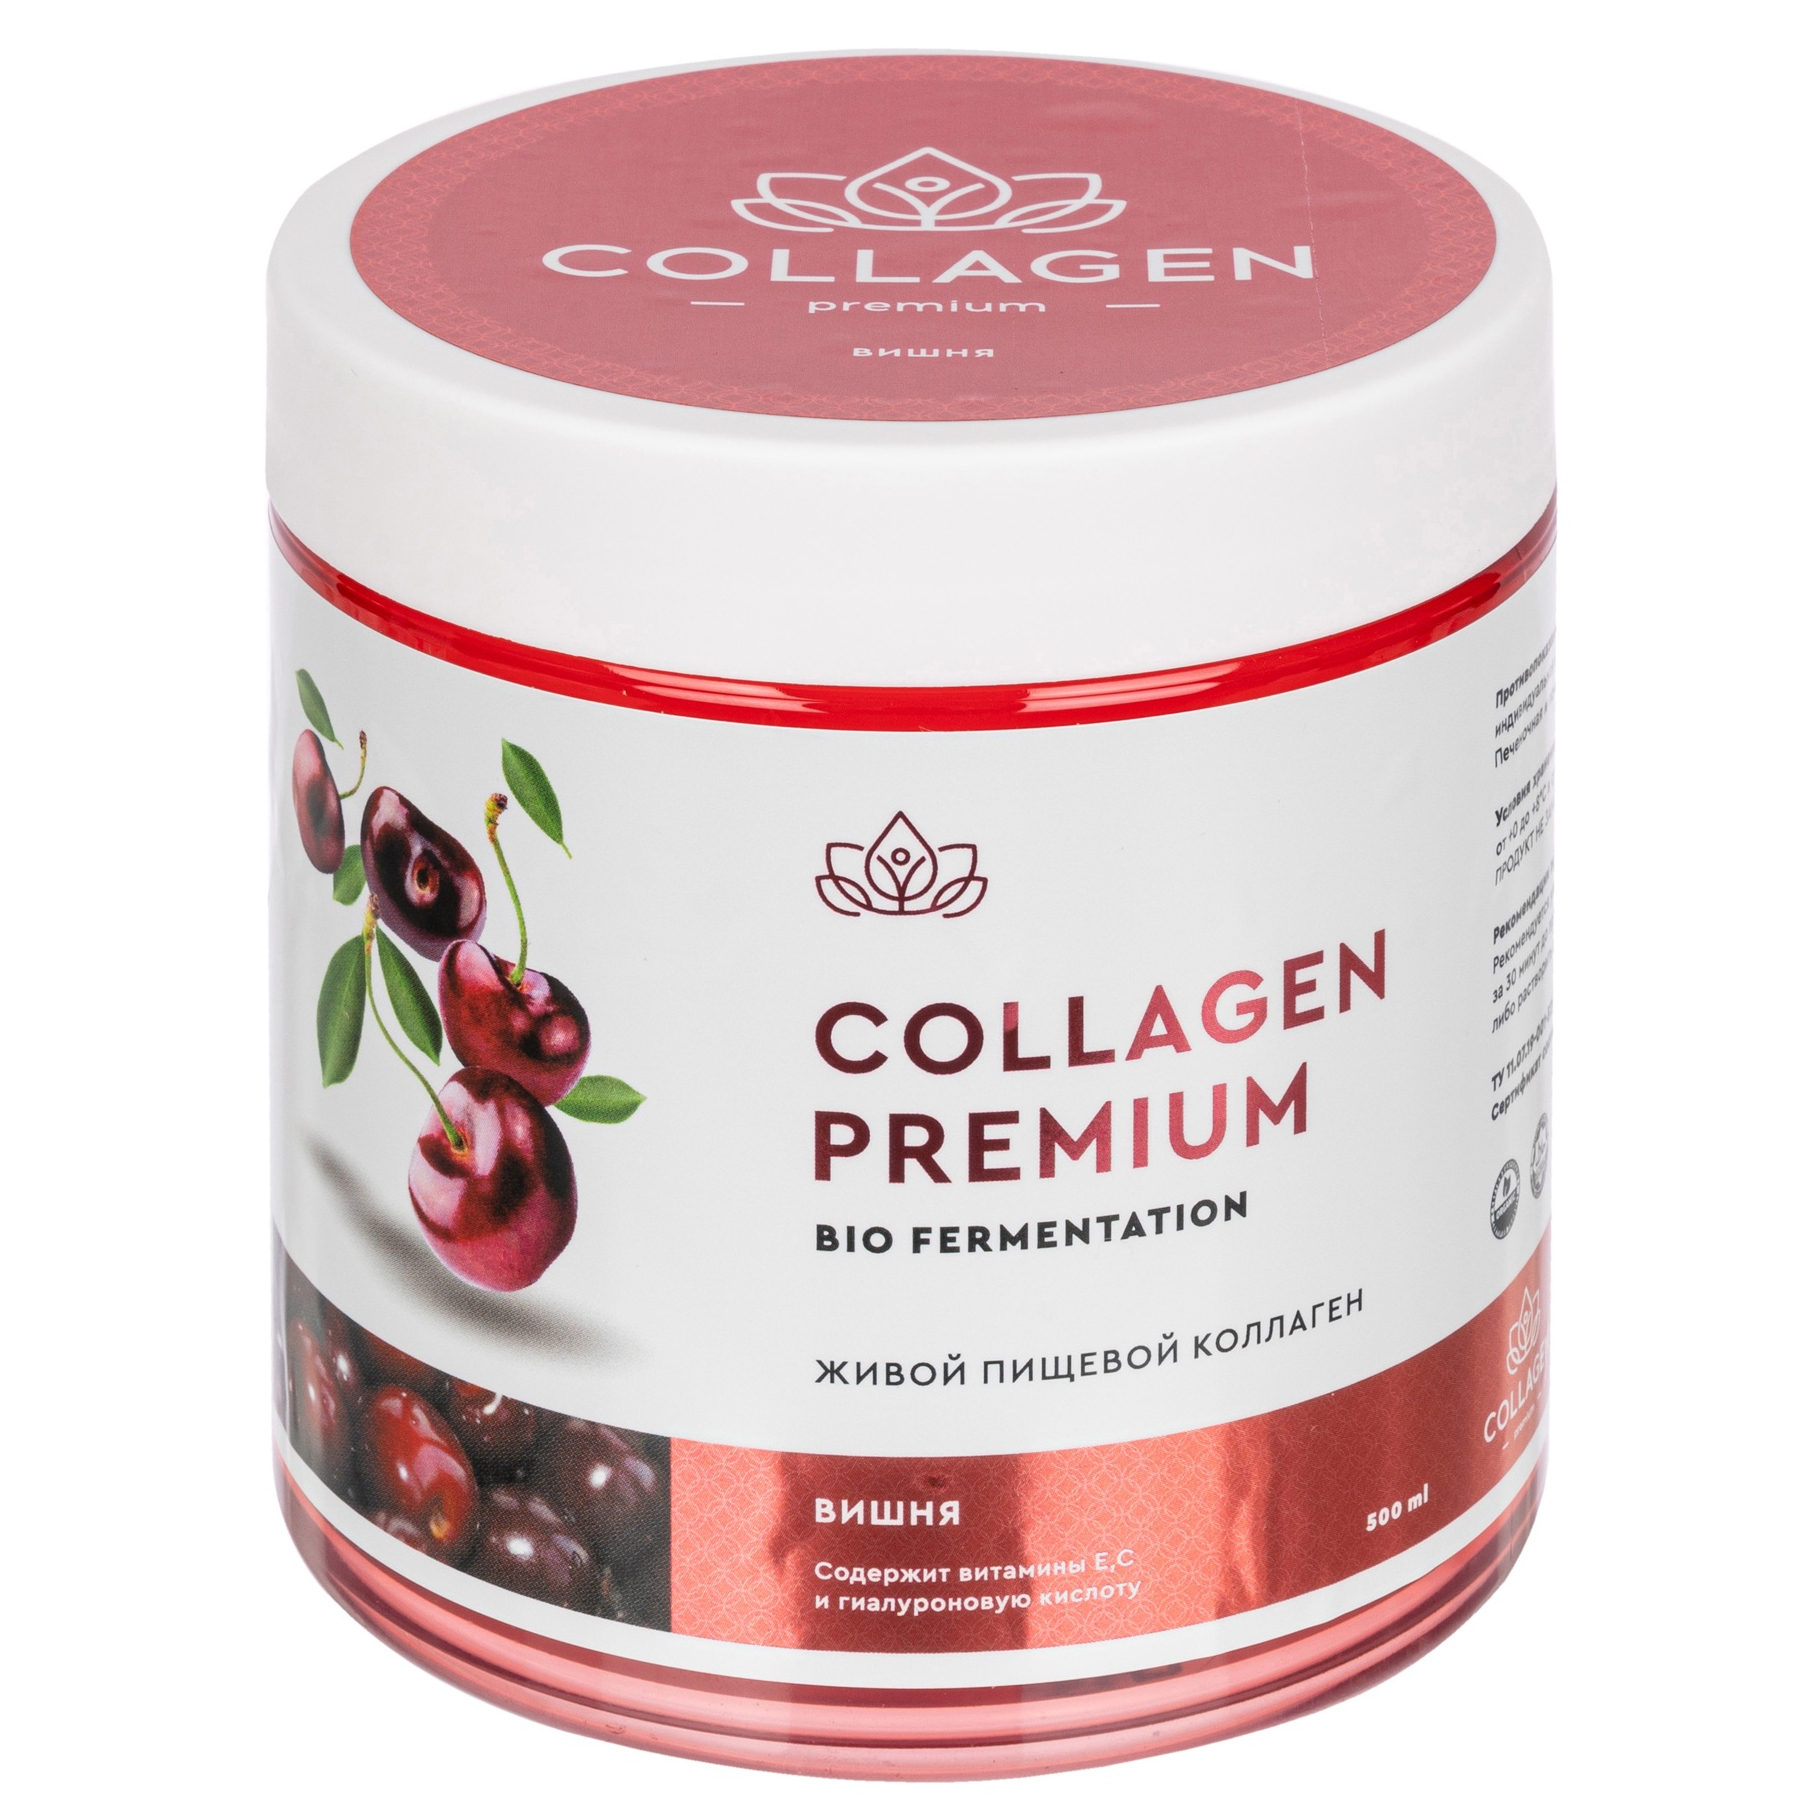 Коллаген Collagen Premium жевательный пищевой желе вишня 500г